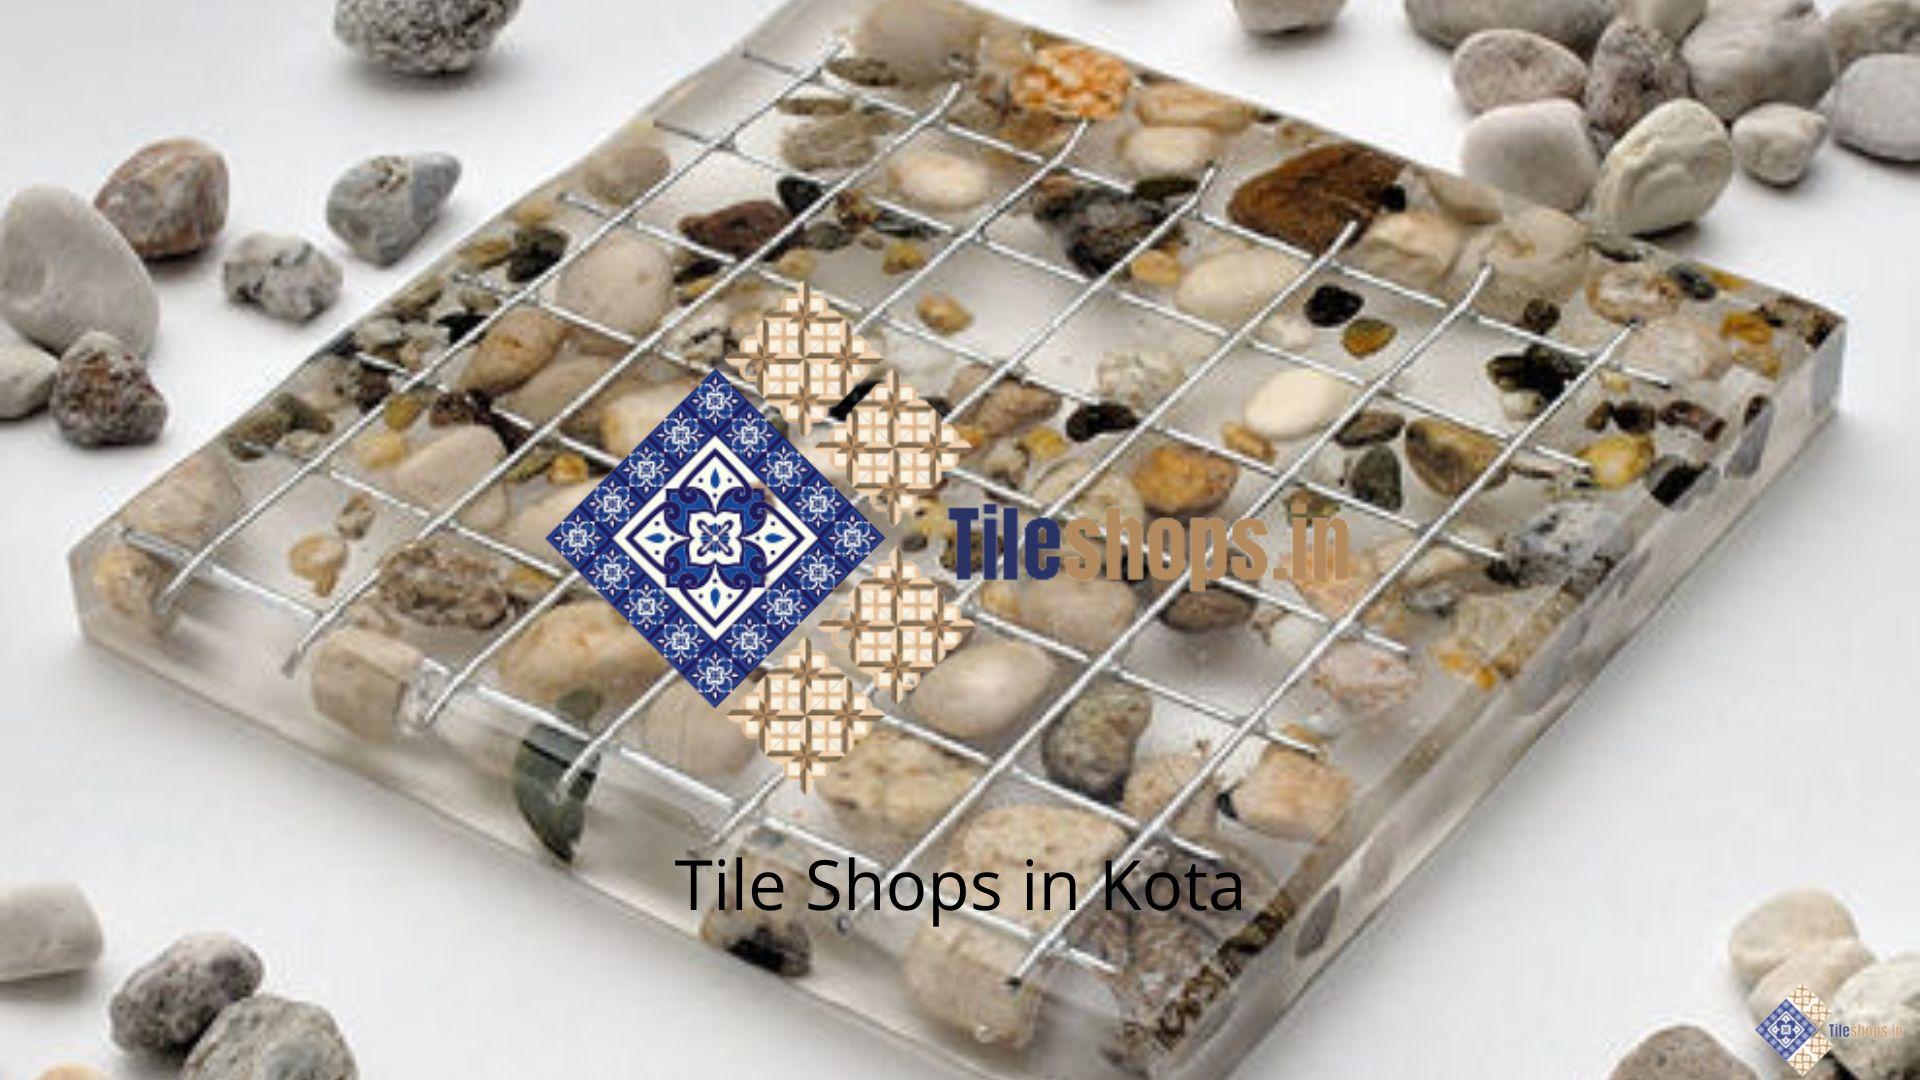 Tile Shops in Kota